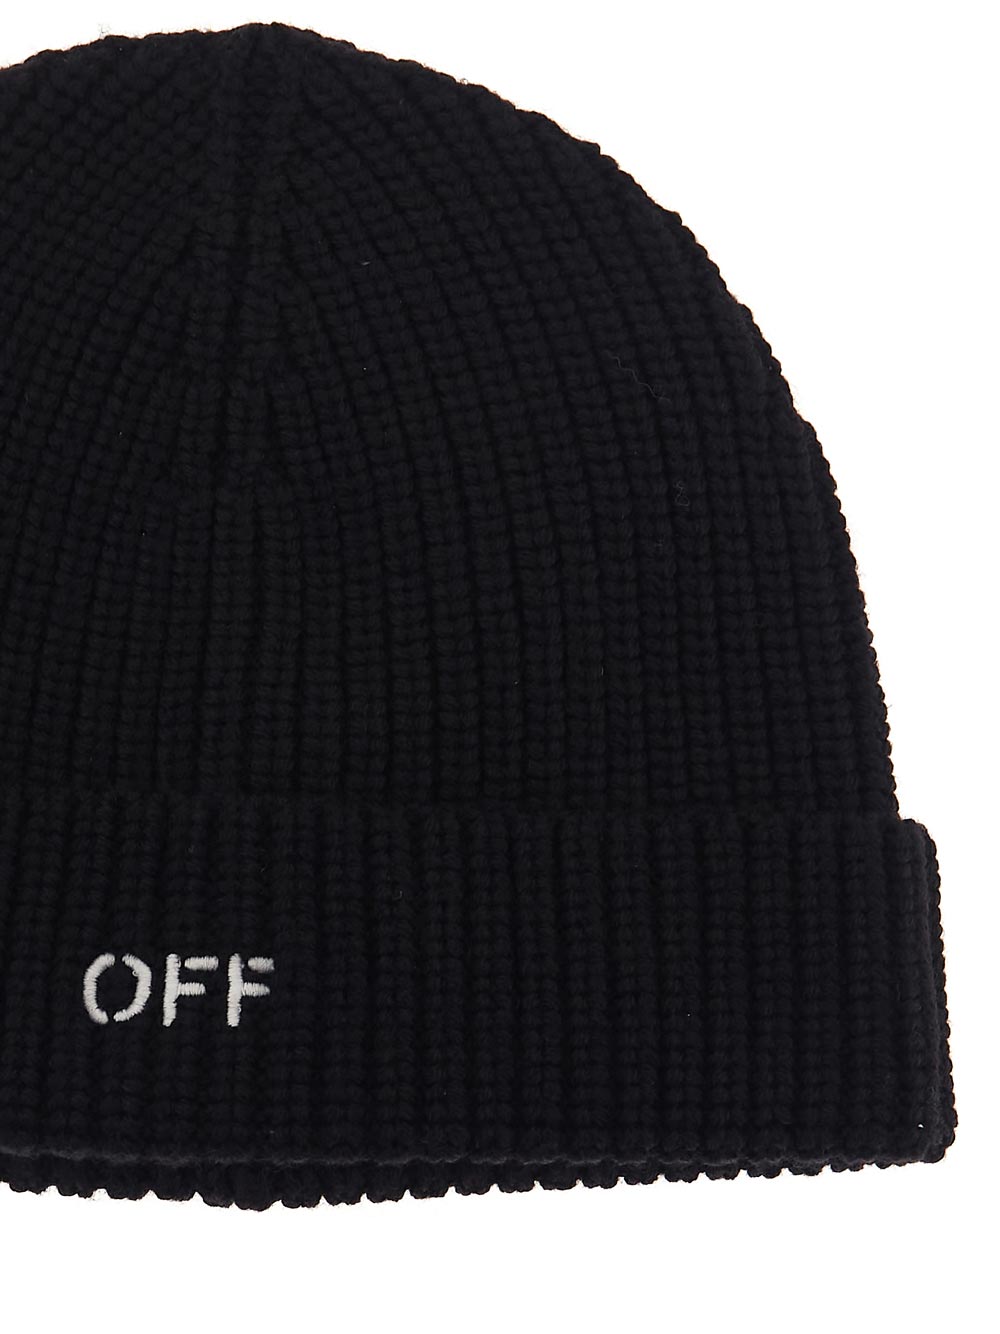 OFF-WHITE OFF-WHITE Hat black OWLC017F23KNI0011004